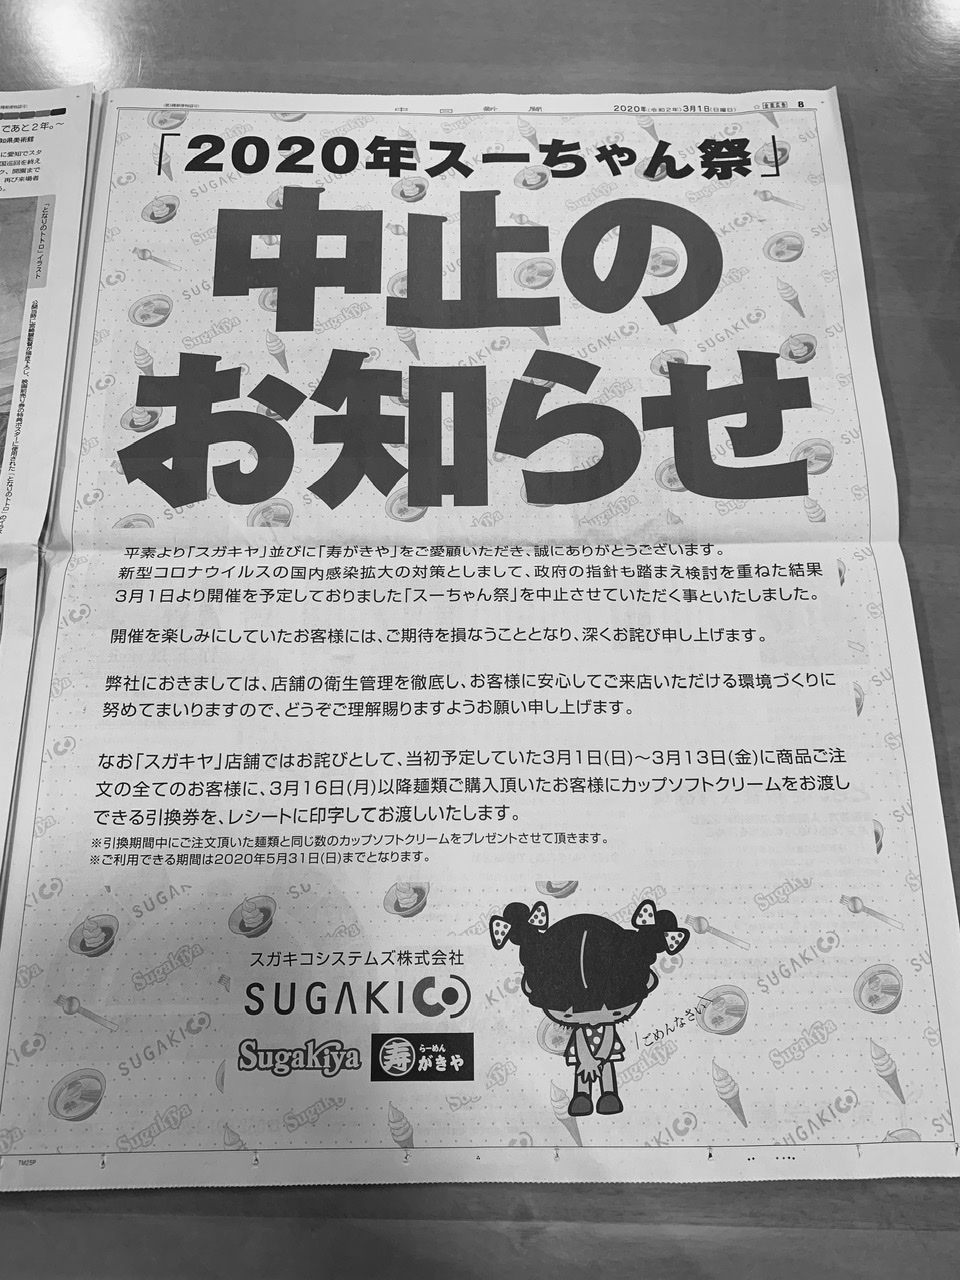 スーちゃん祭り中止のお知らせ ラーメン一杯食べると無料チケットがもらえるキャンペーンが開催予定だった きんしゃちブログ